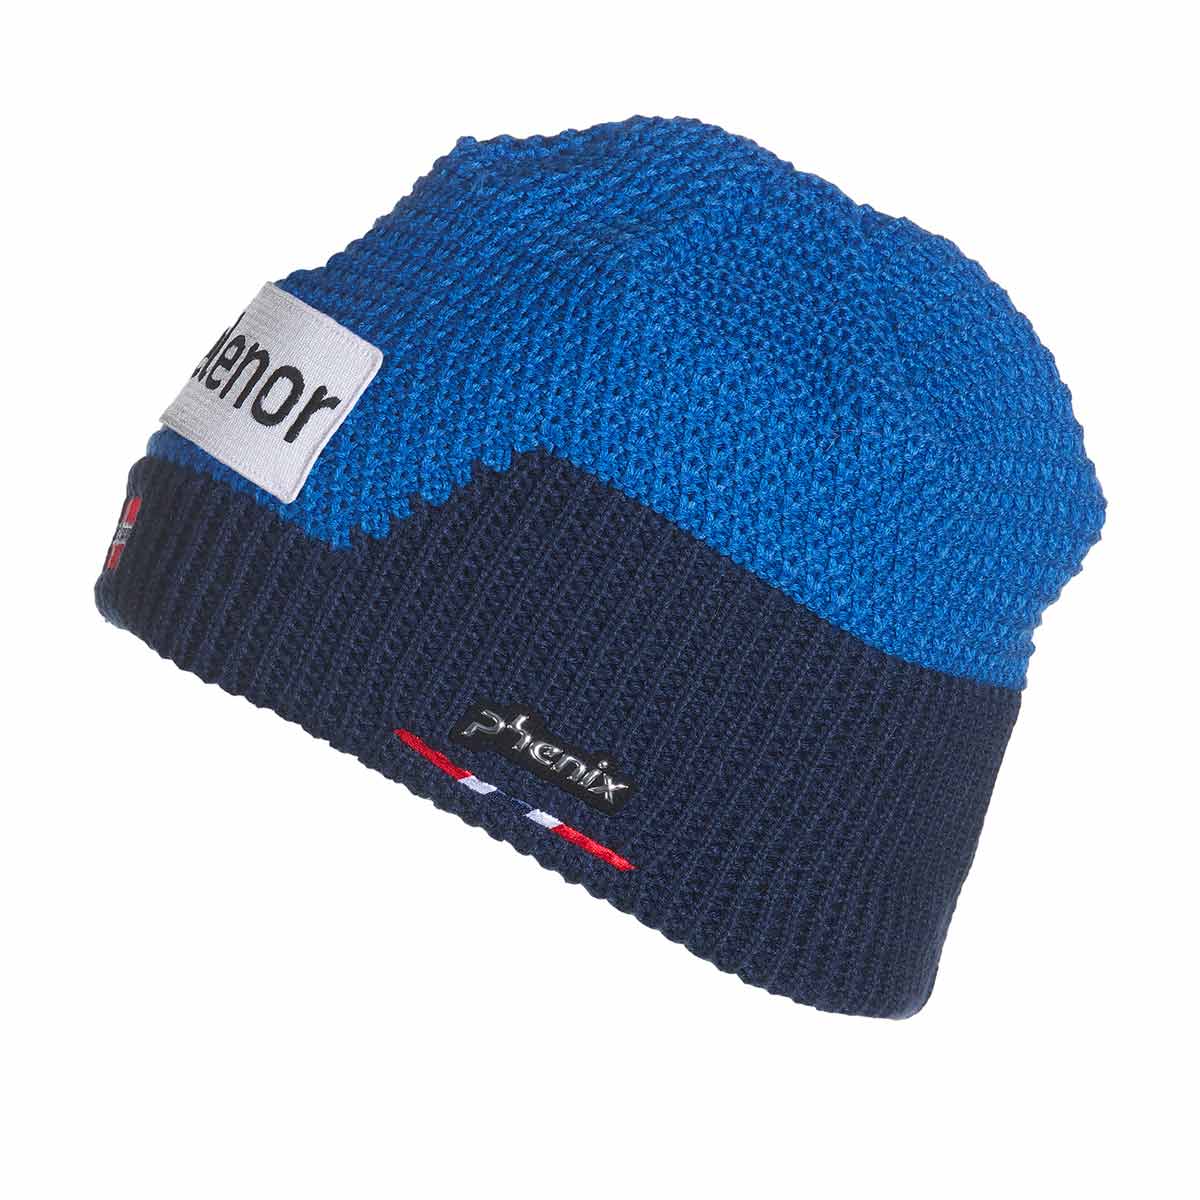 Phenix Norway Alpine Team Knit Hat - Powder7